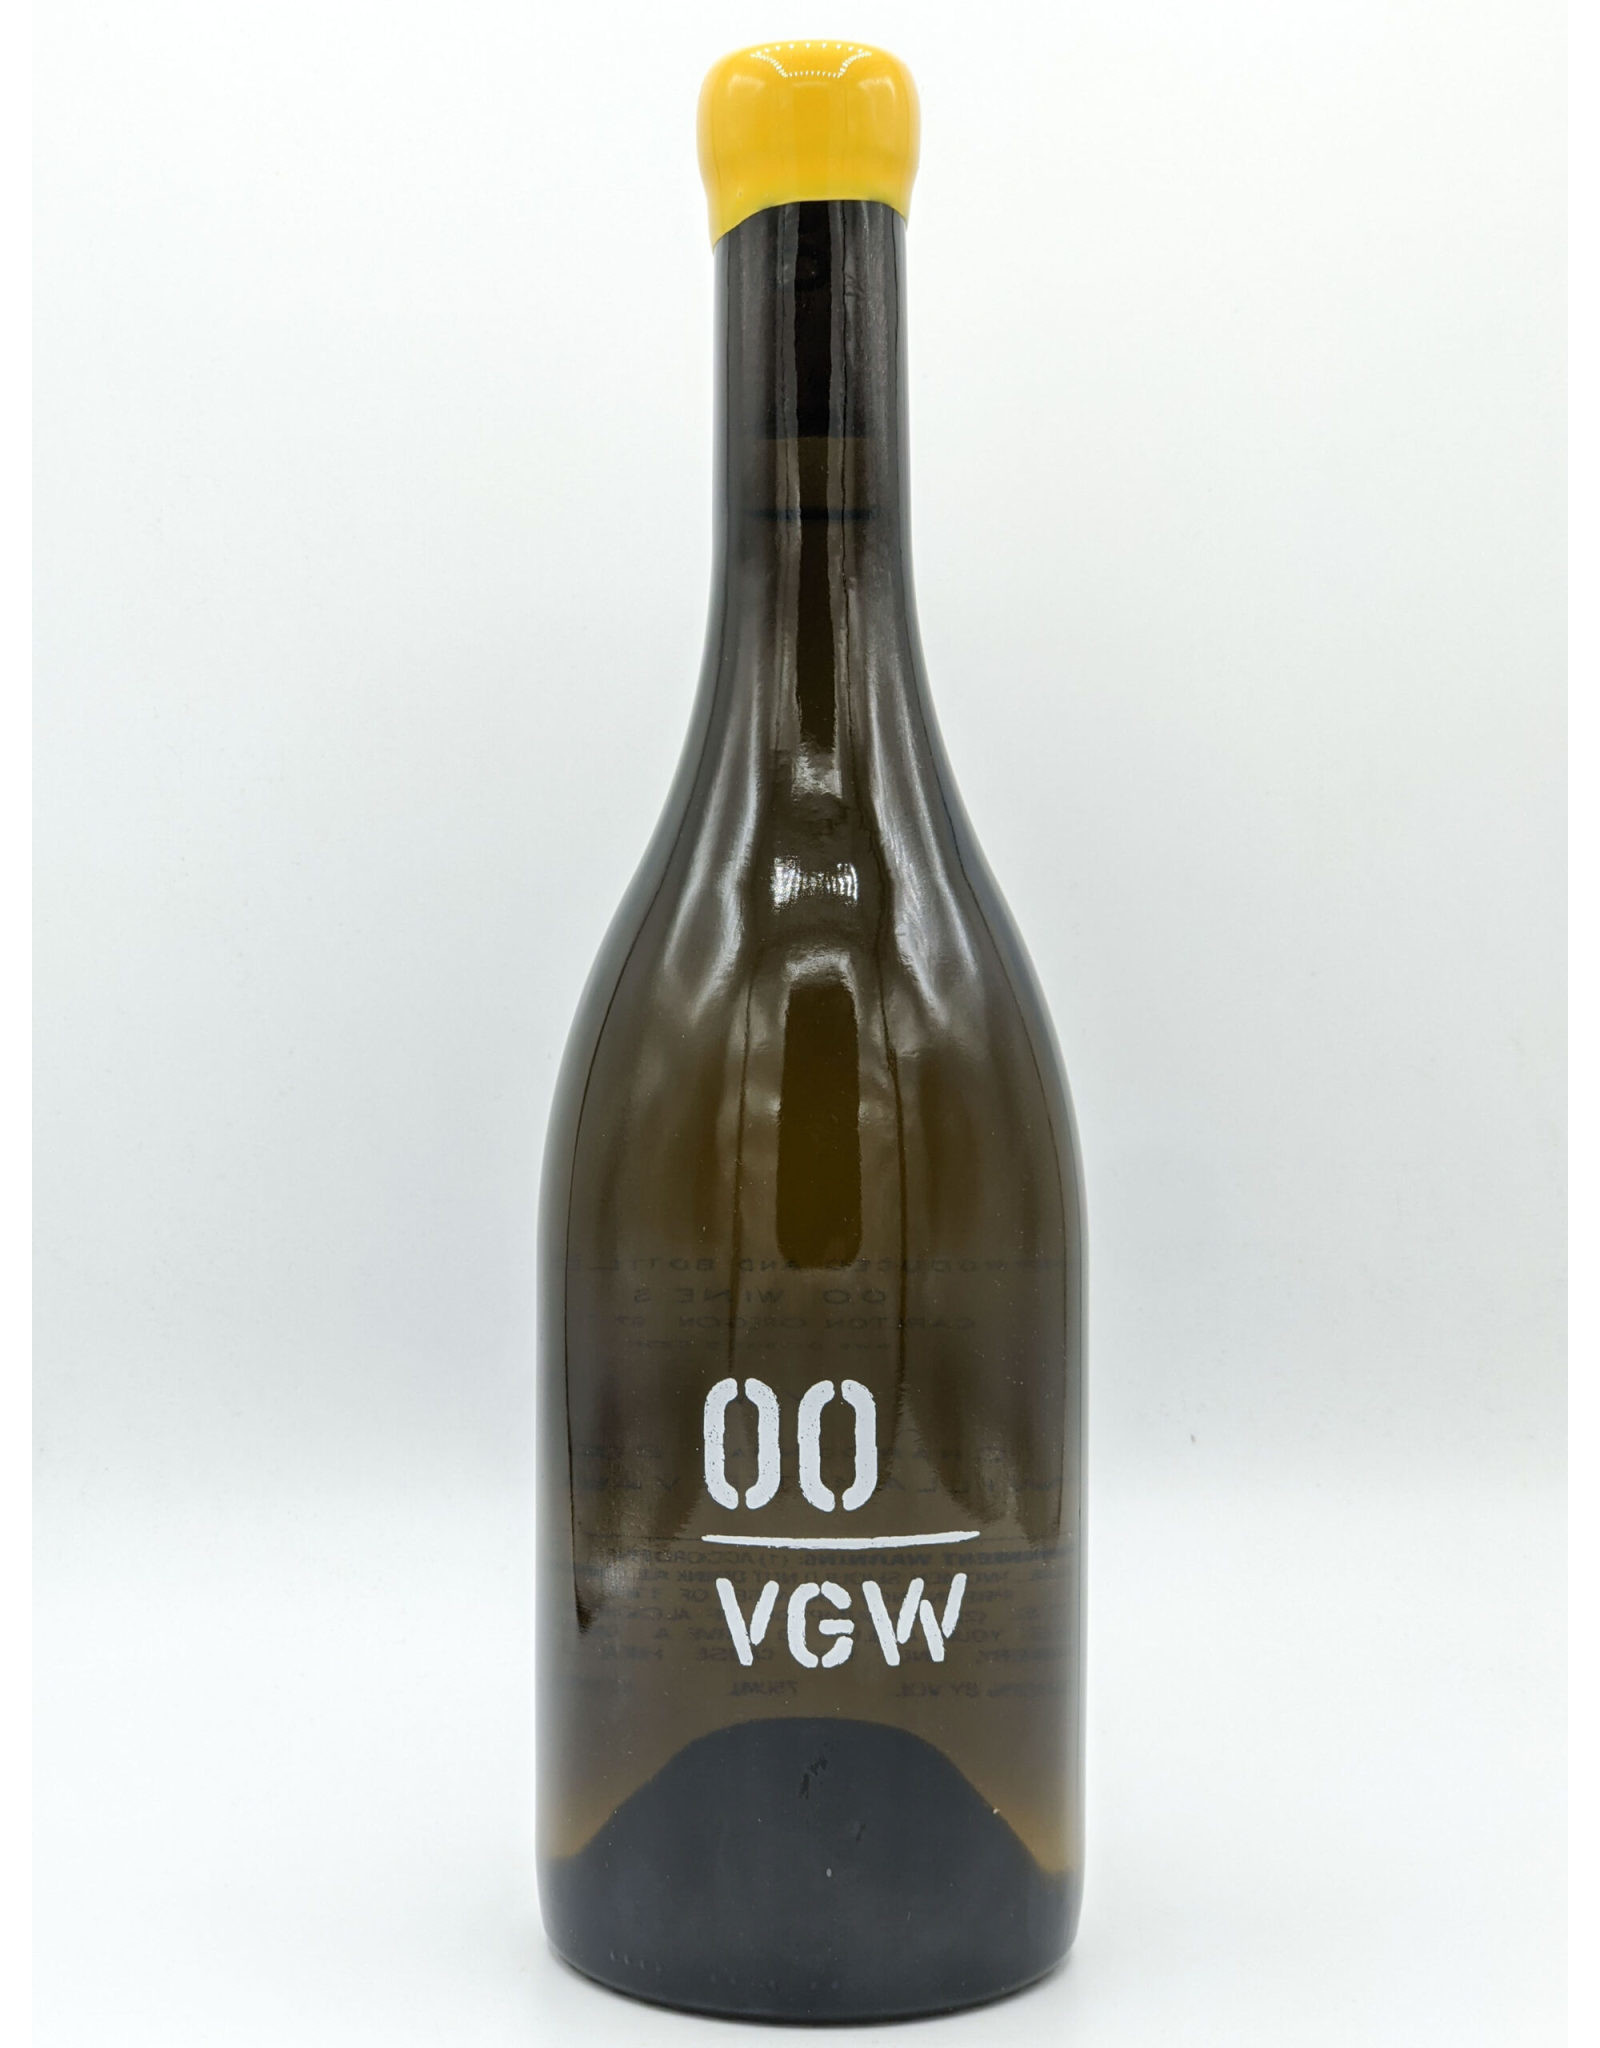 00 VGW Chardonnay 2017